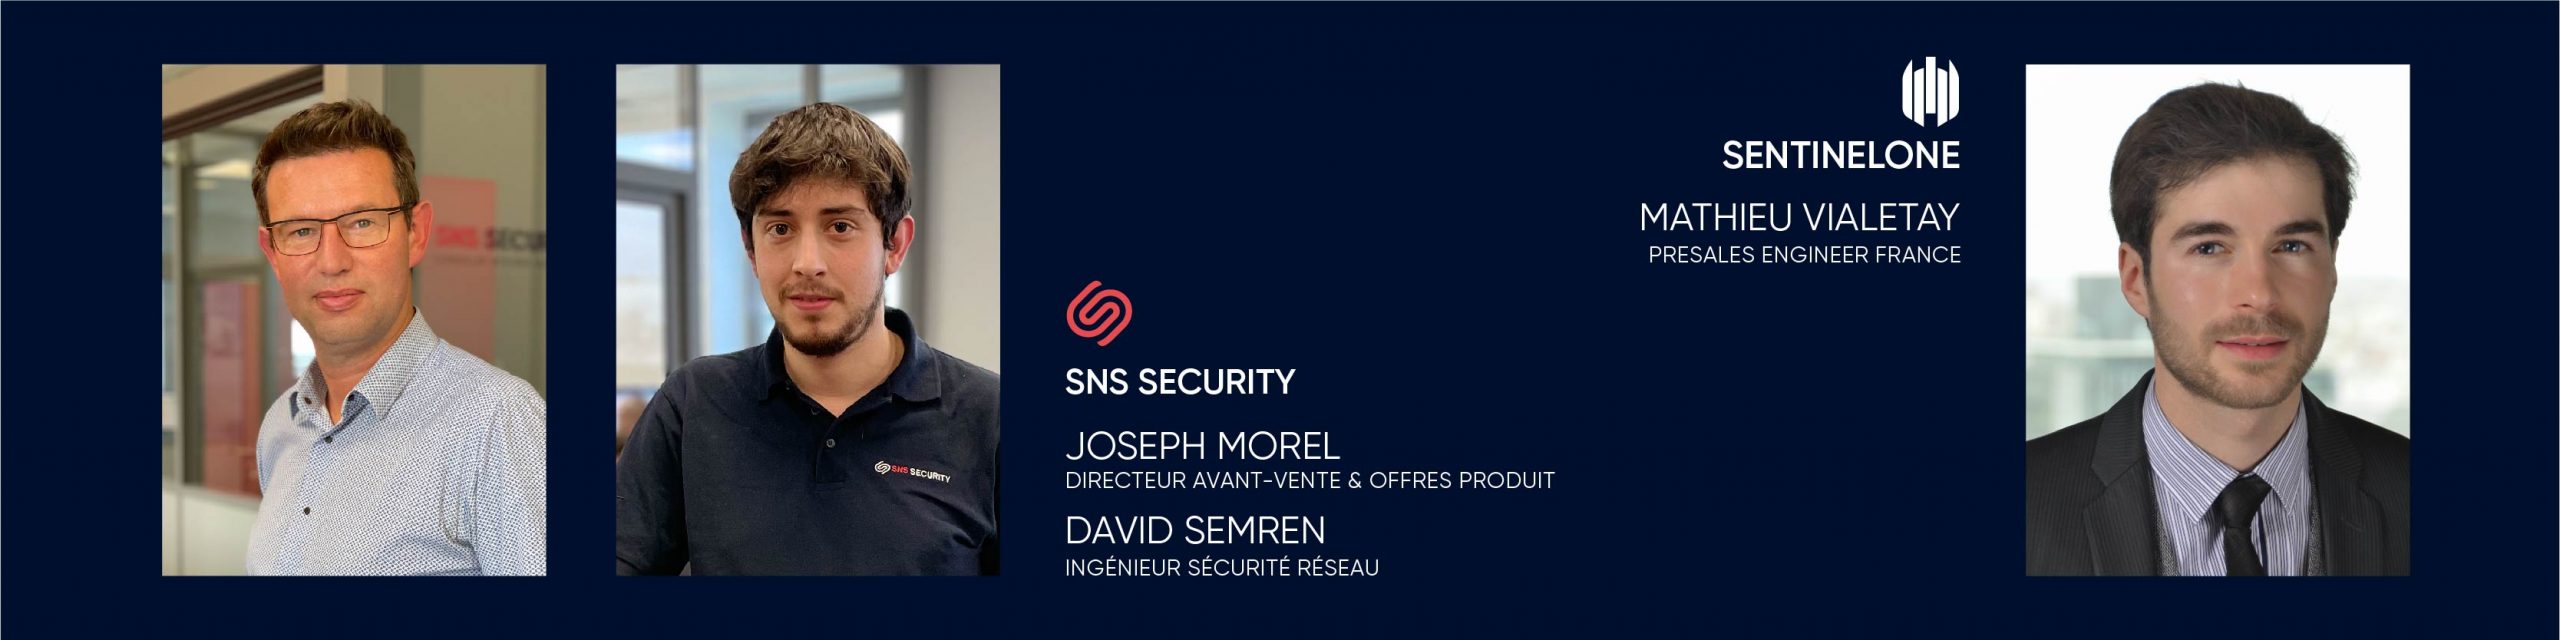 Joseph MOREL, Directeur avant-vente et offres produit, David SEMREN, Ingénieur sécurité réseau et Mathieu VIALETAY, Presales engineer France.